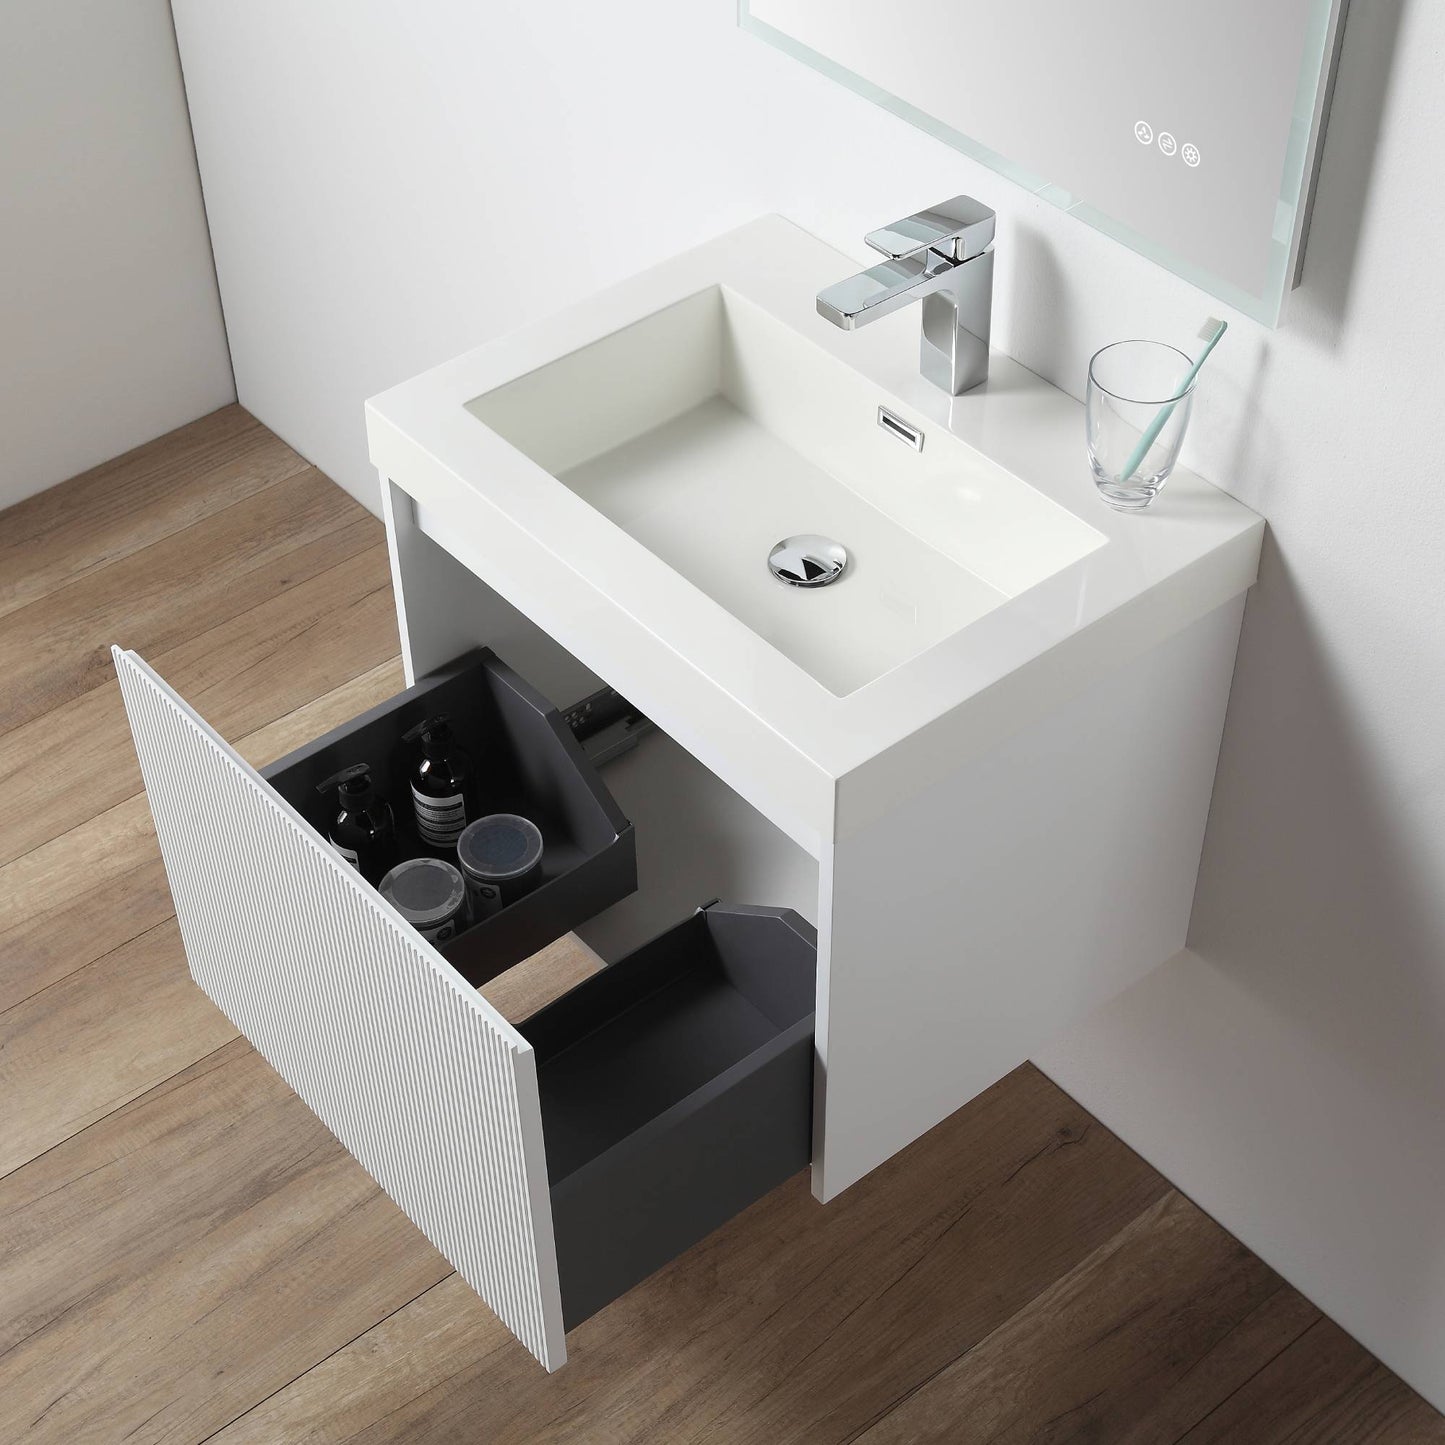 Positano 24" Floating Bathroom Vanity with Acrylic Sink - Matte White